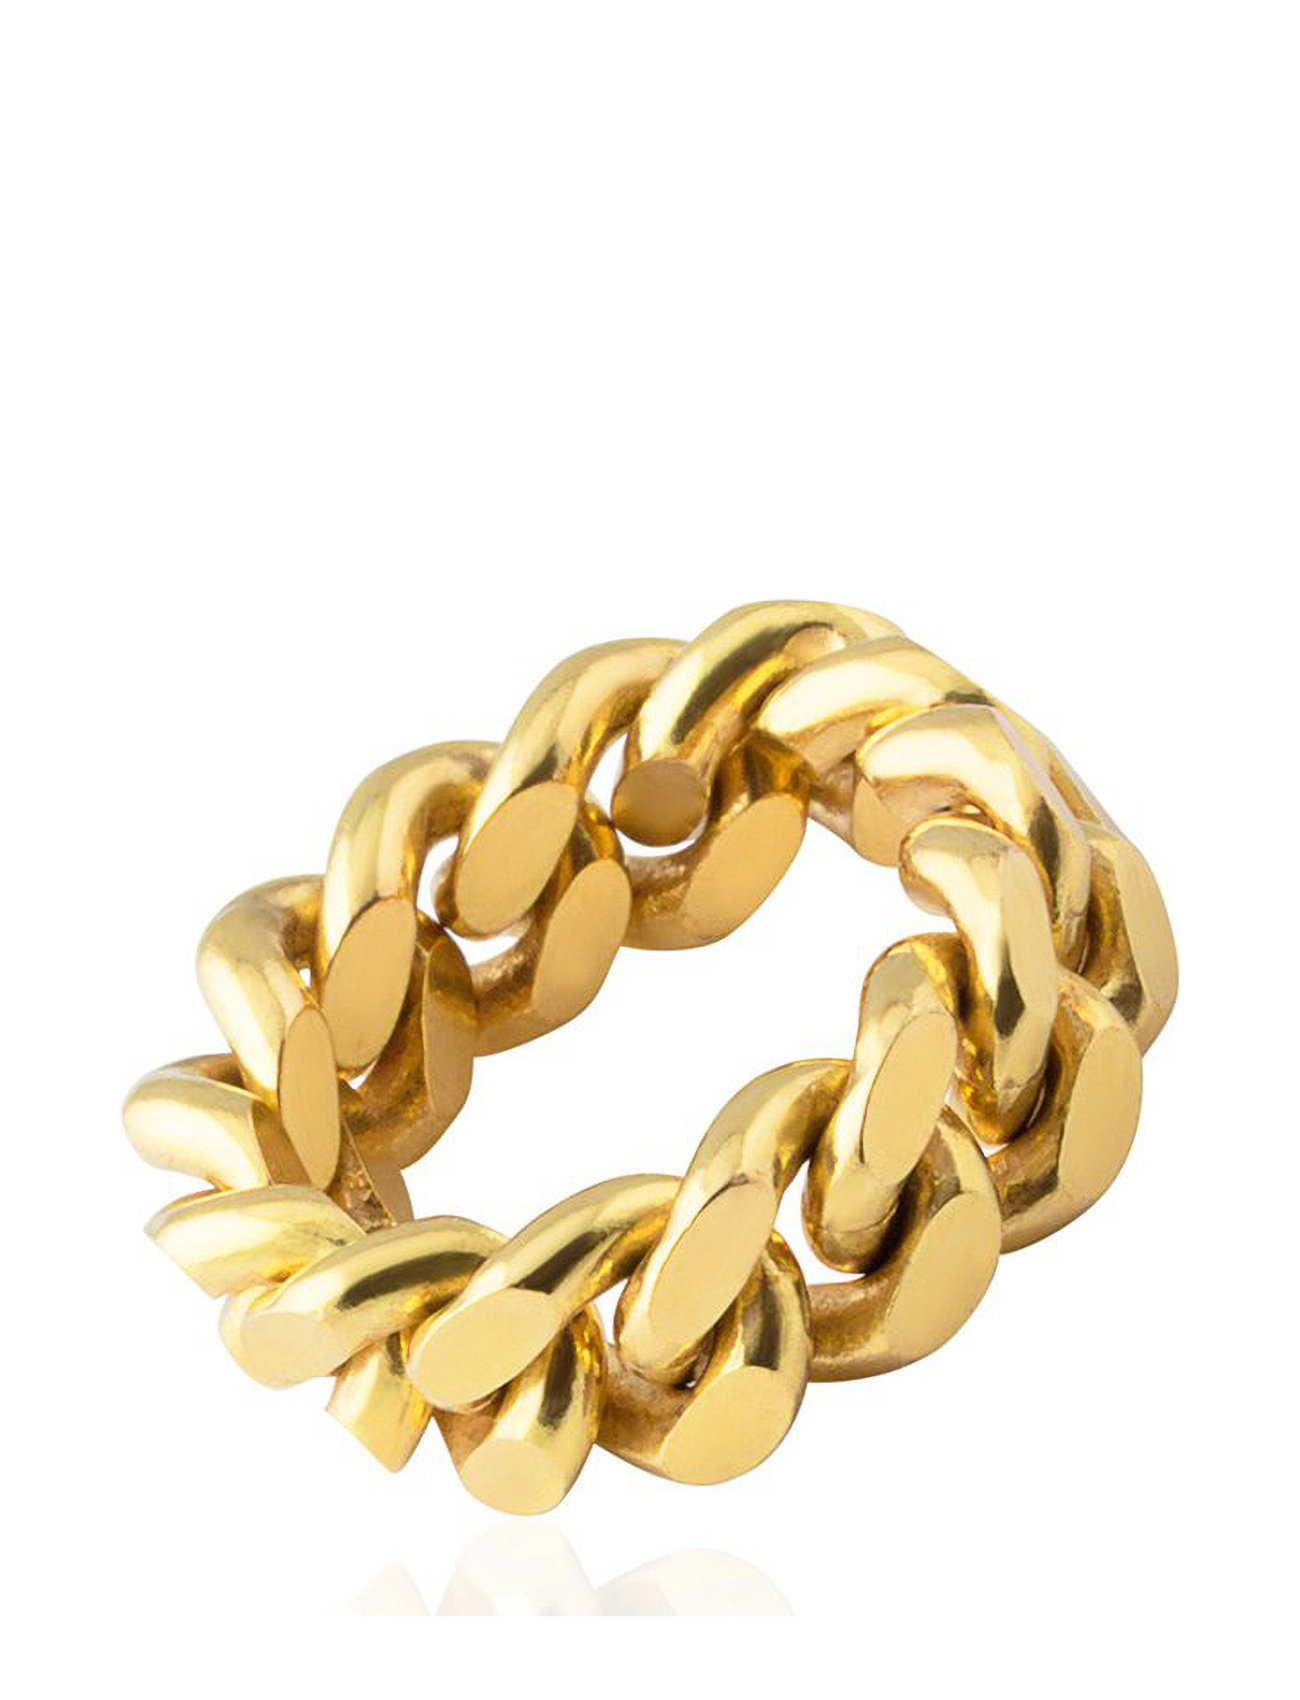 Adept Forekomme Klemme Pansar Thin Ring Ring Smykker Guld SOPHIE By SOPHIE ringe fra SOPHIE by  SOPHIE til dame i Guld - Pashion.dk